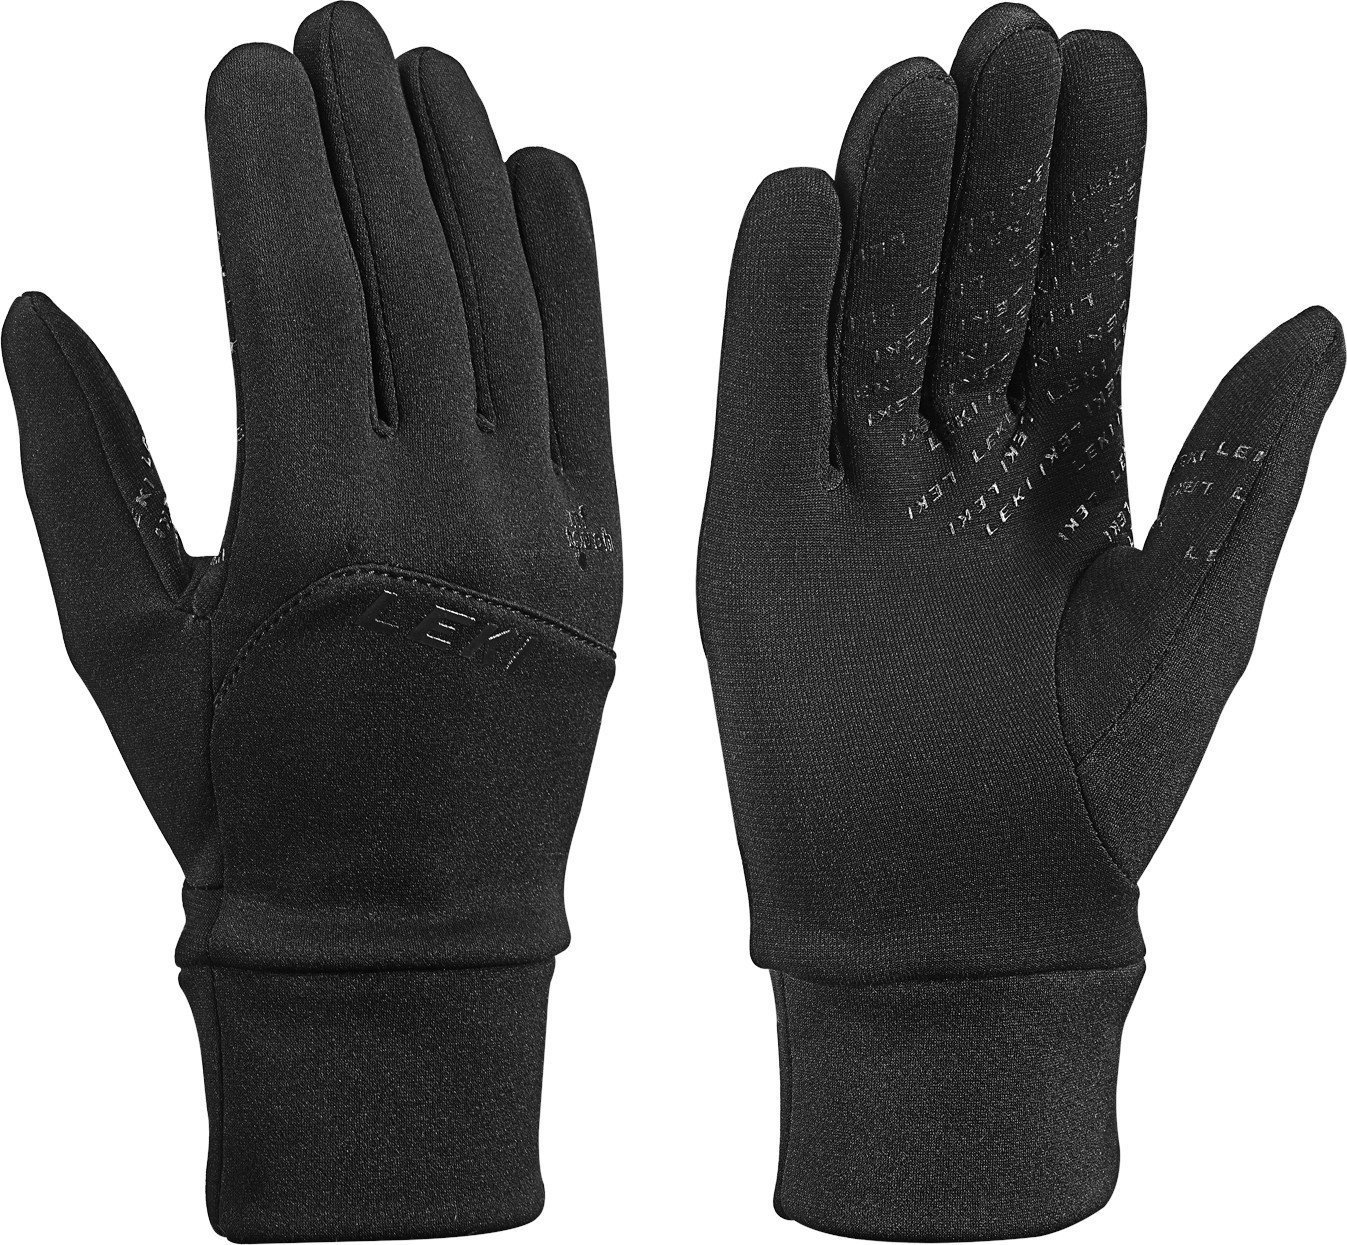 Smučarske rokavice Leki Urban MF Touch Black 10 Smučarske rokavice